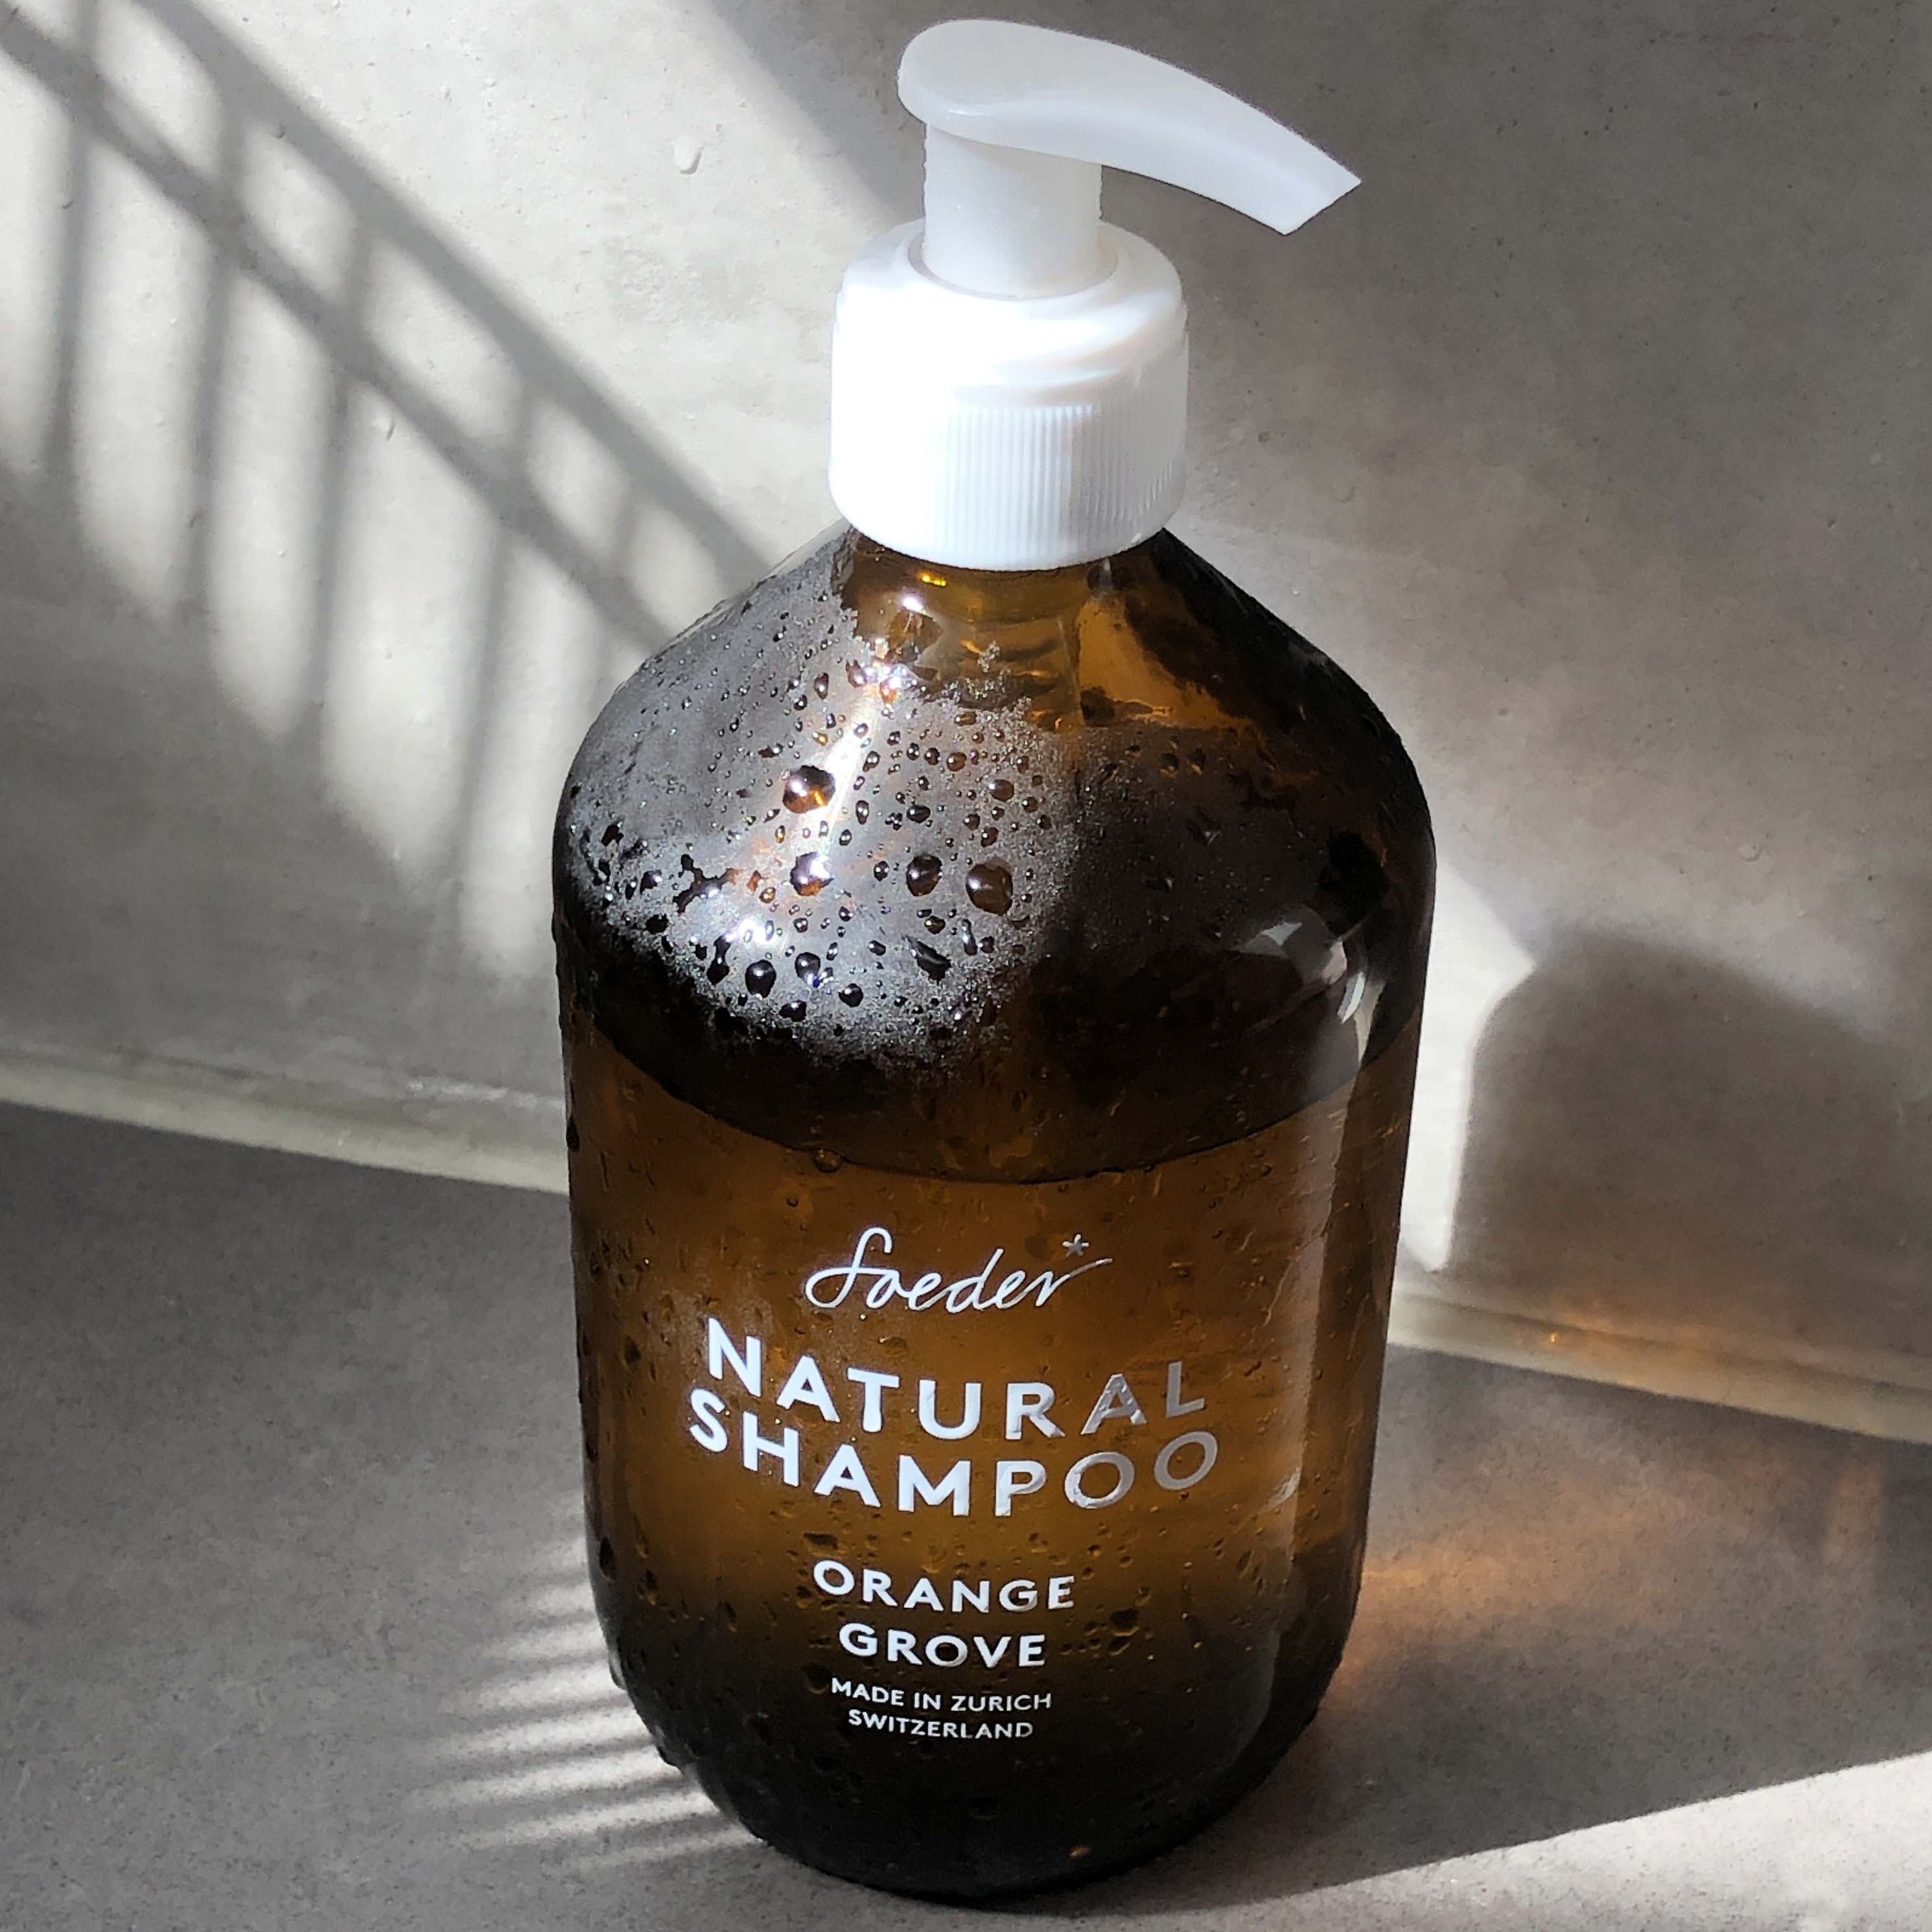 Natural Shampoo - Orange Grove 500 ml von soeder*